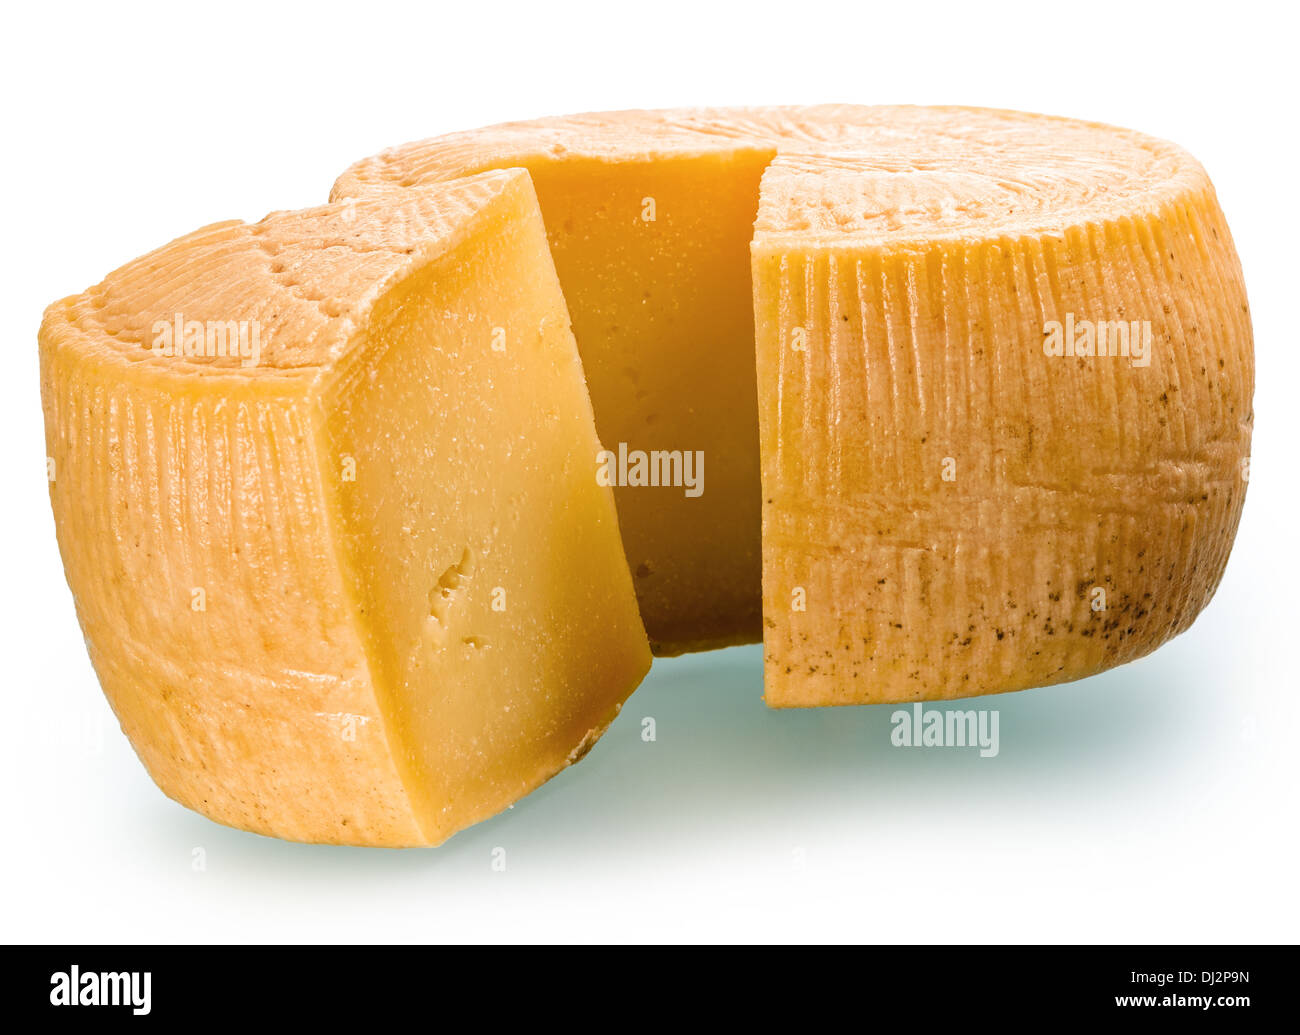 Des fromages est très proche. Images recueillies à partir de plusieurs images d'augmenter le domaine d'intérêt Banque D'Images